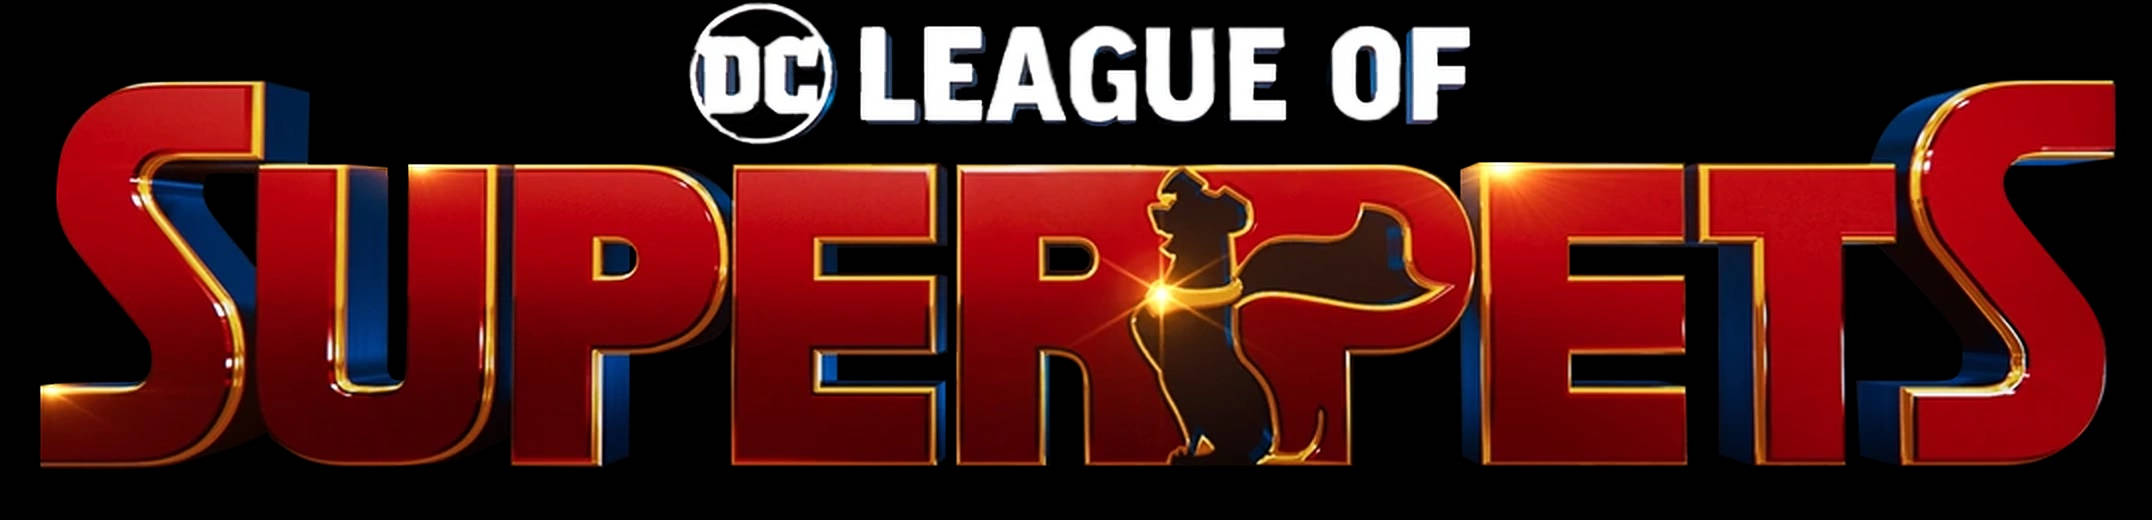 Dc League Of Super Pets Logo Background